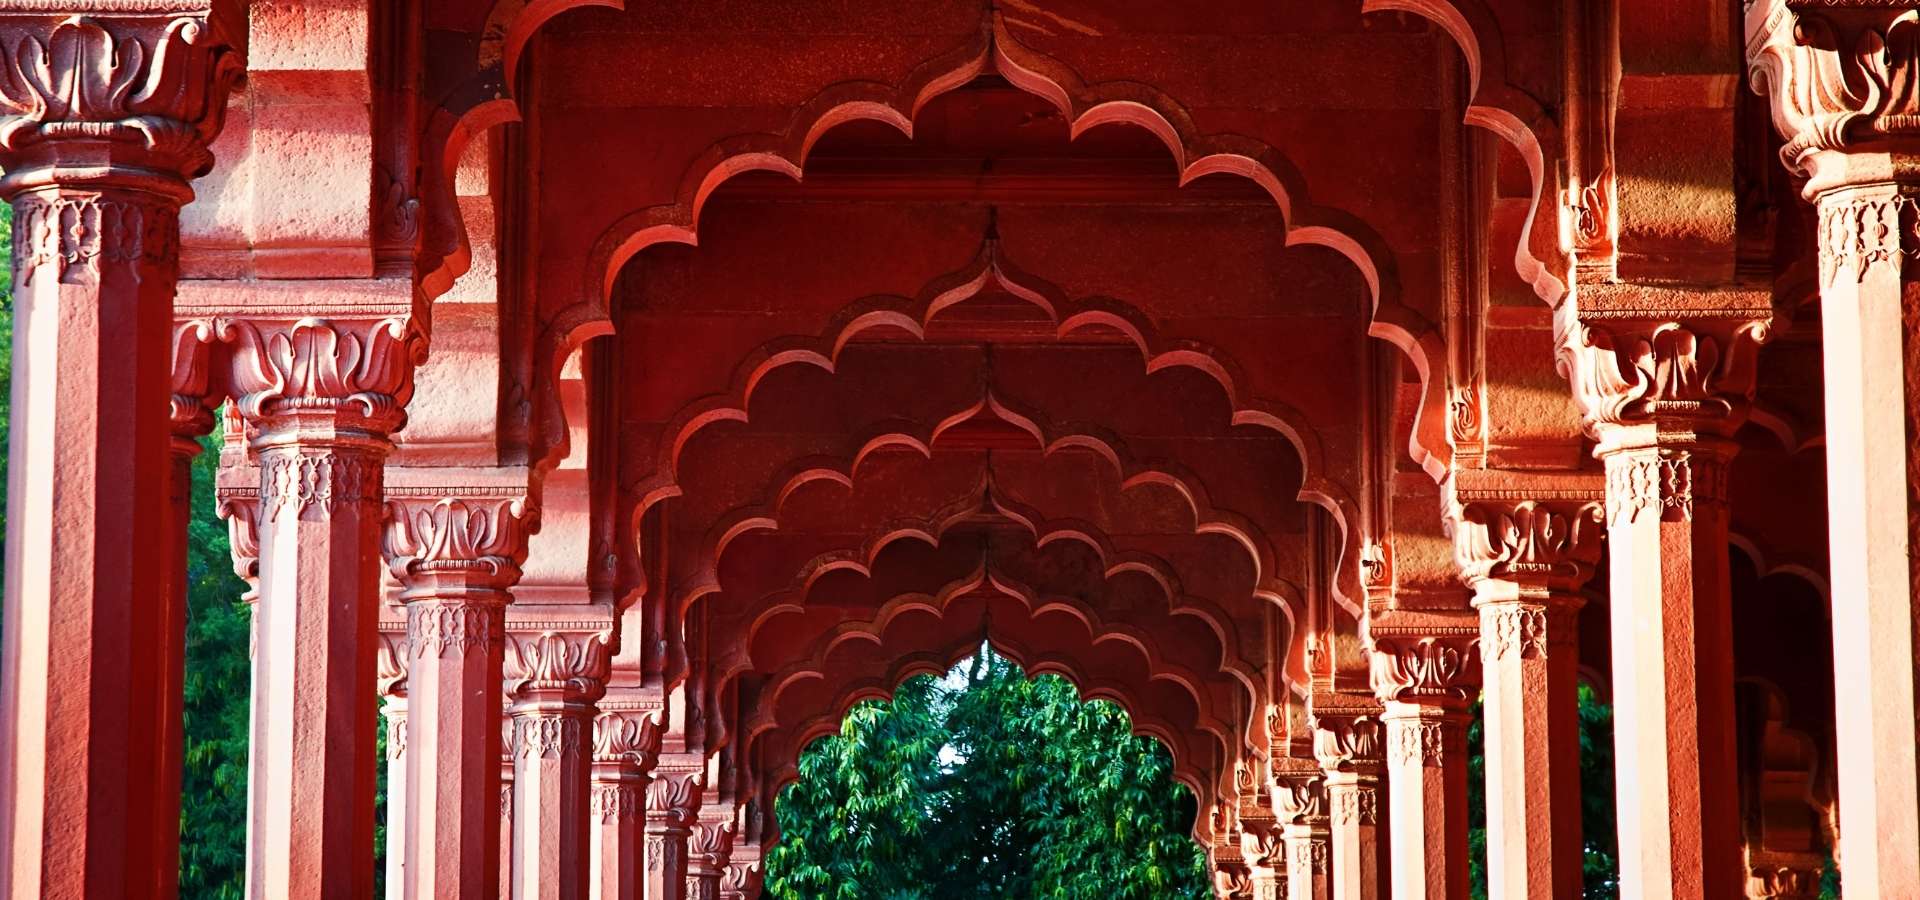 Intian kaunista arkitehtuuria Jaipurissa